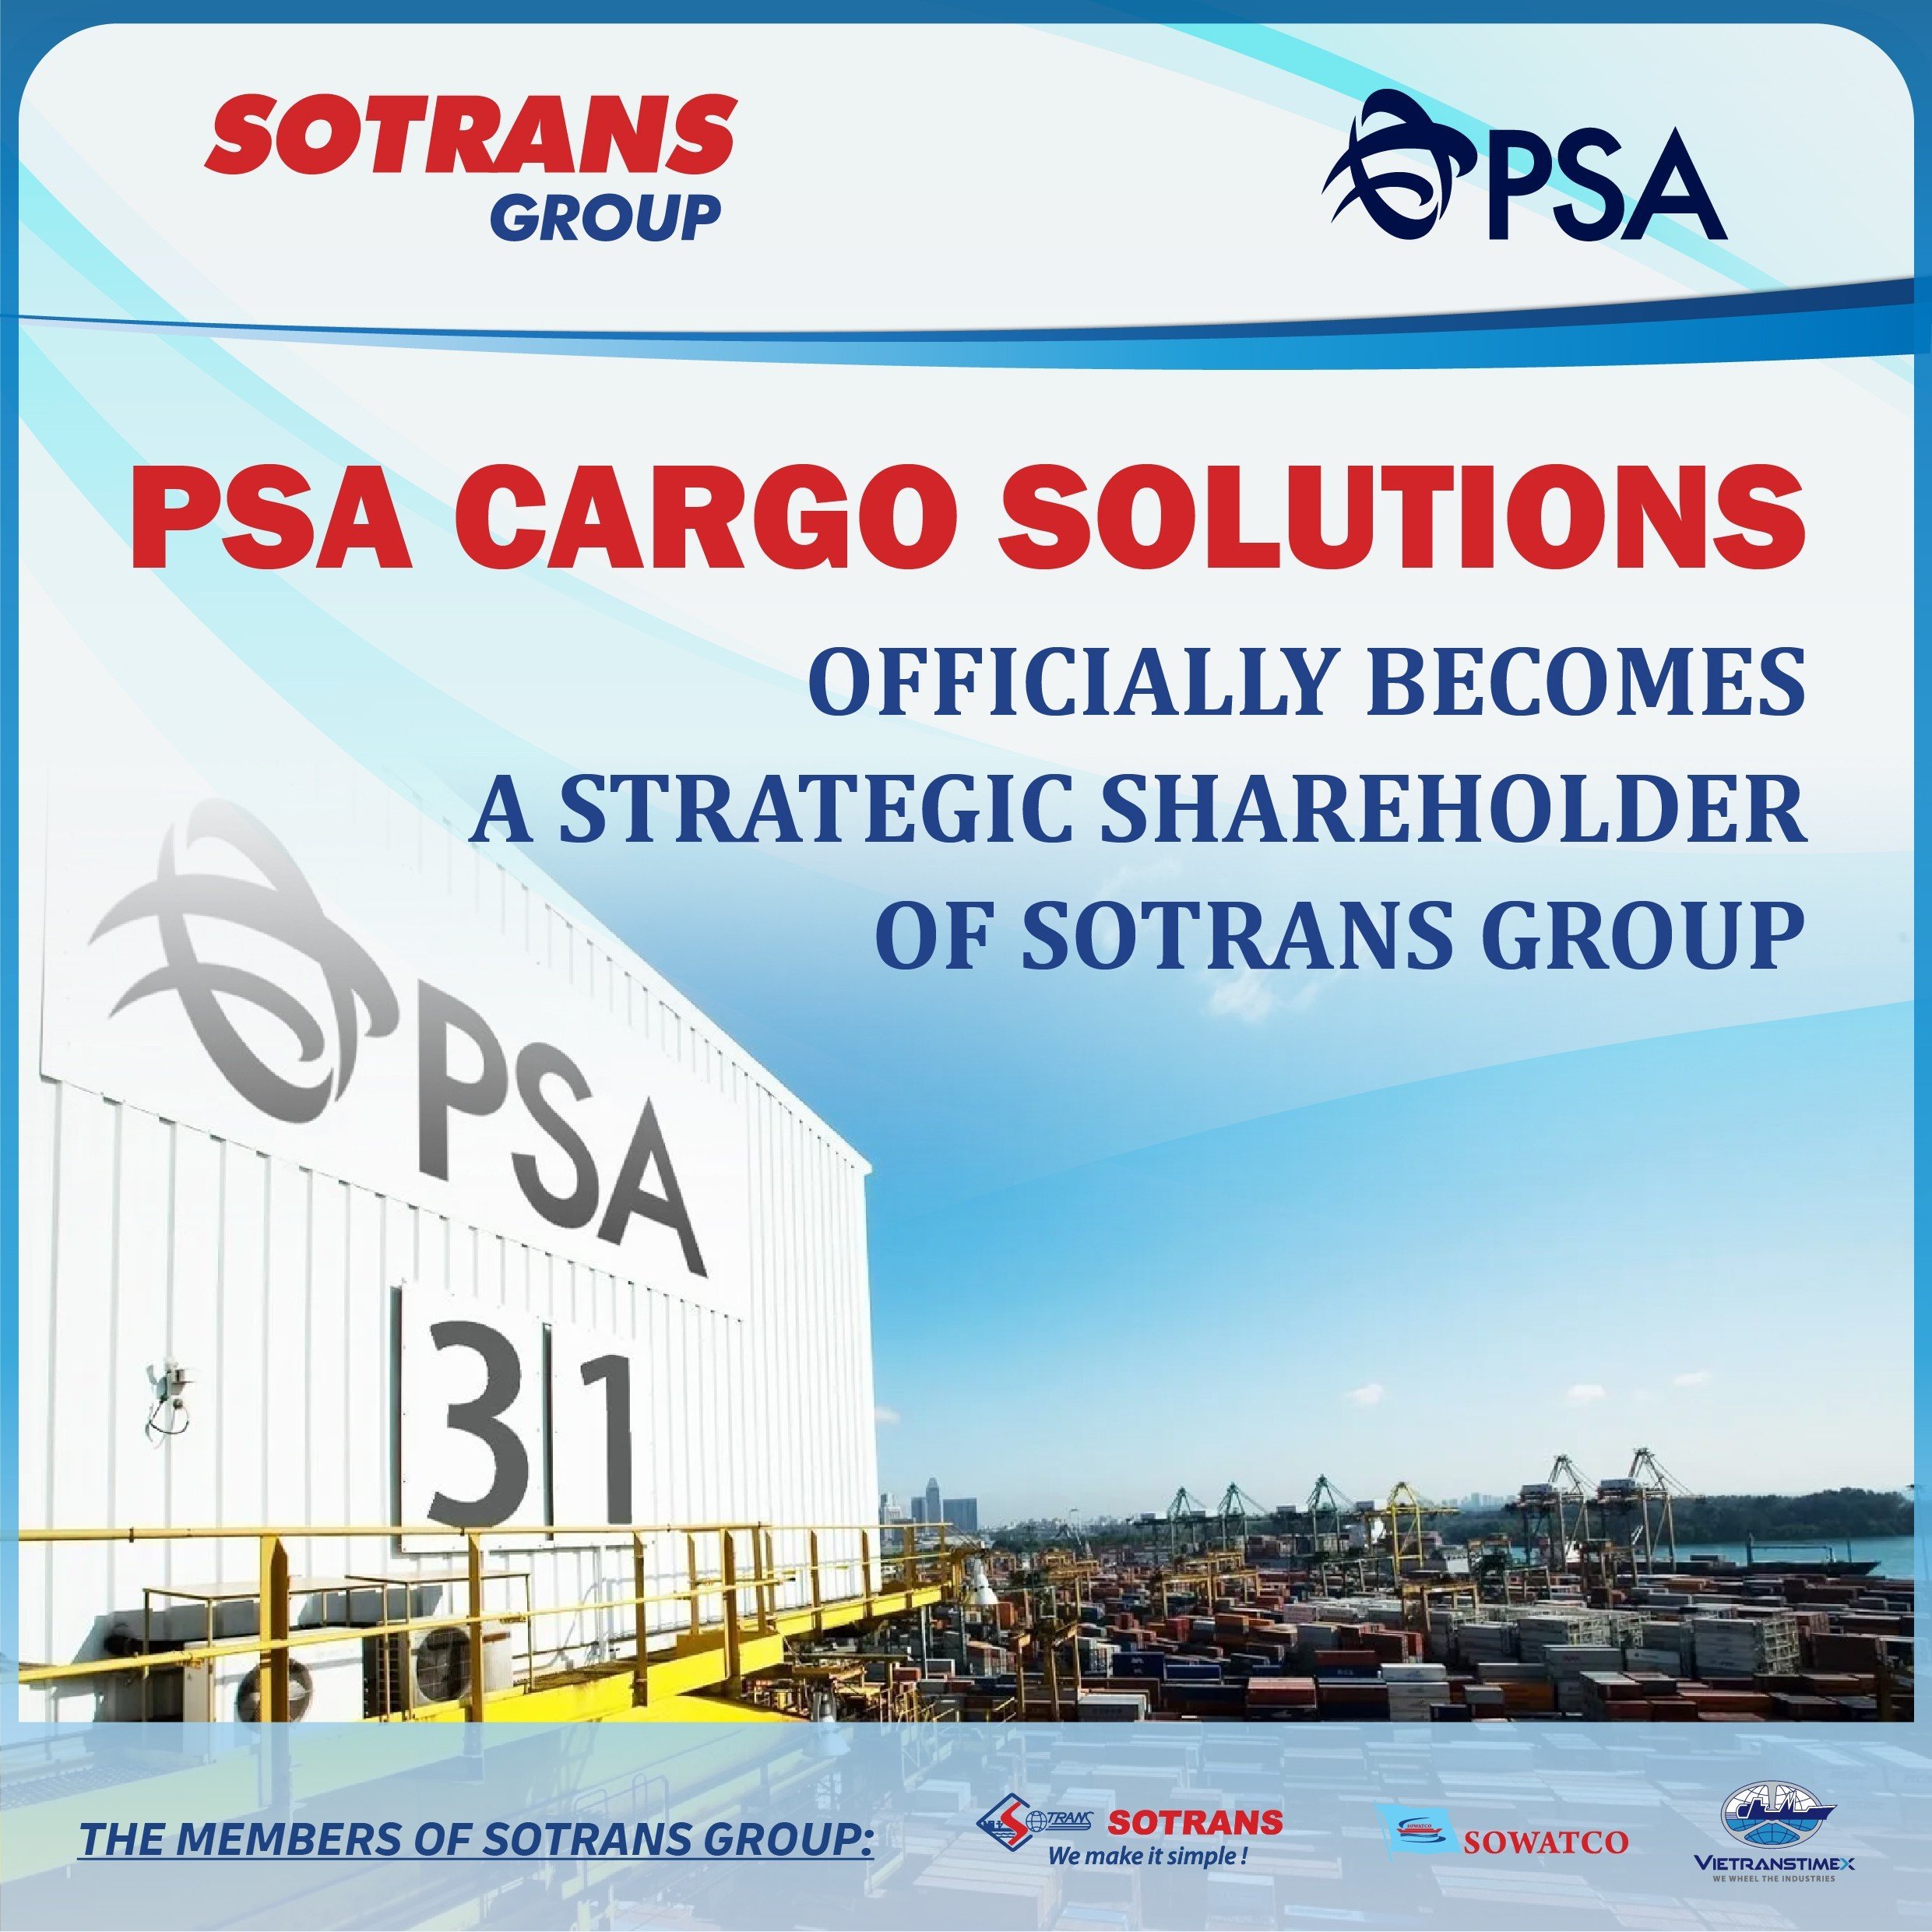 PSA Cargo Solutions Chính Thức Trở Thành Cổ Đông Lớn Của Sotrans Group